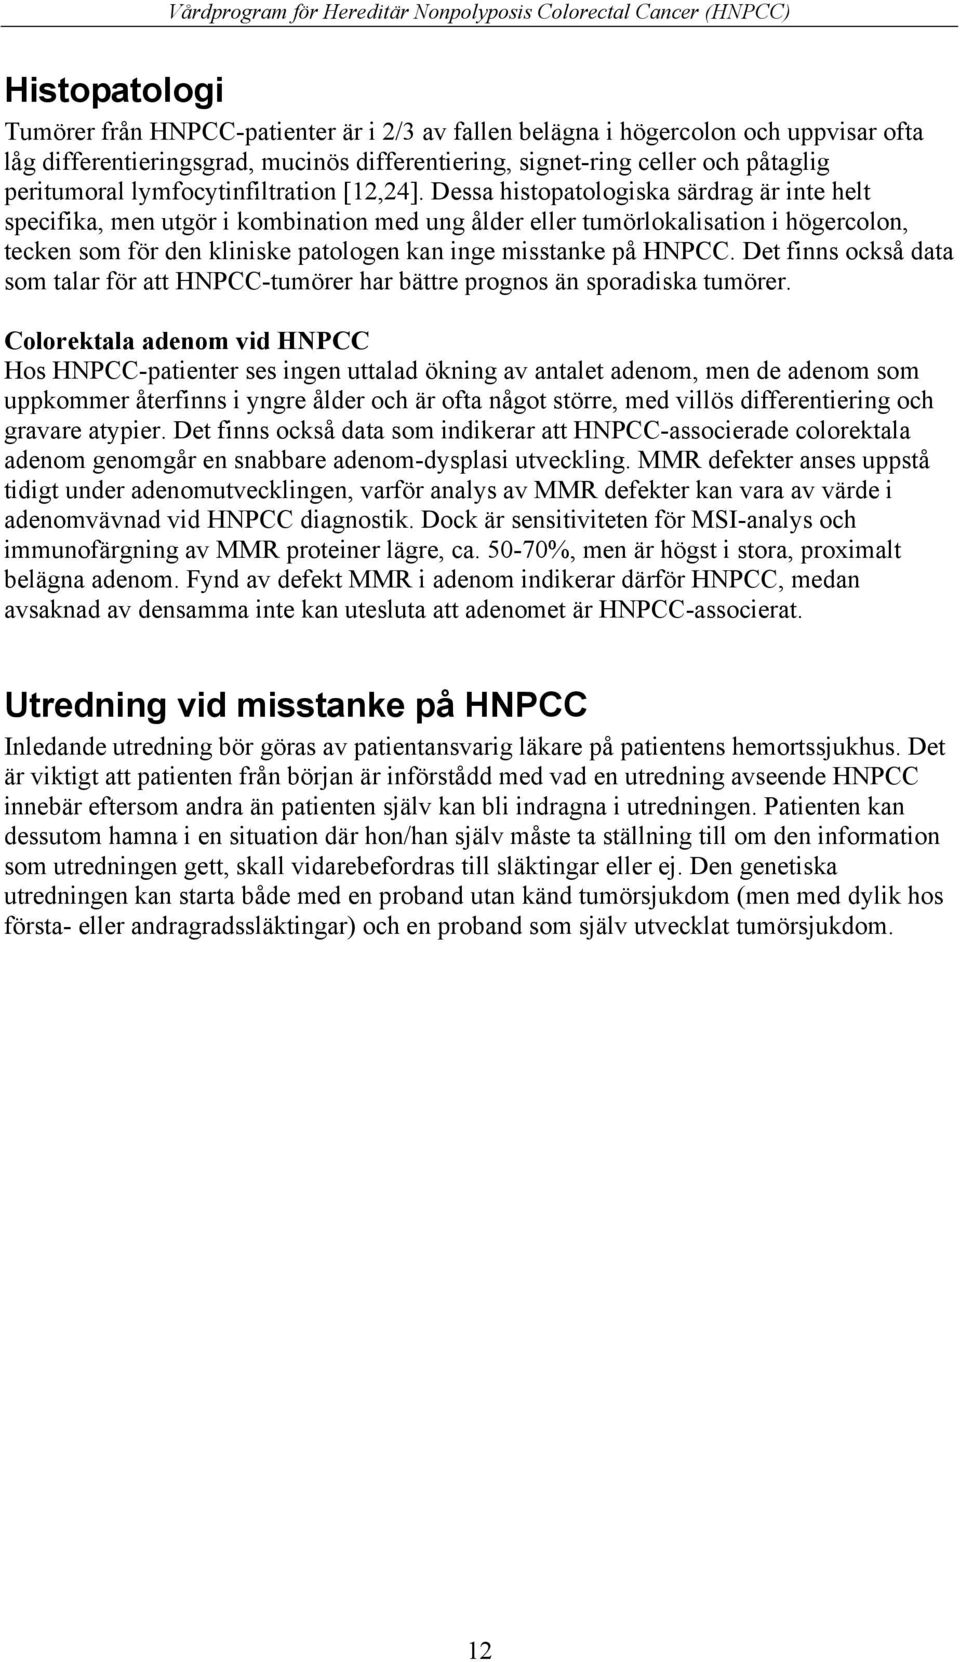 Dessa histopatologiska särdrag är inte helt specifika, men utgör i kombination med ung ålder eller tumörlokalisation i högercolon, tecken som för den kliniske patologen kan inge misstanke på HNPCC.